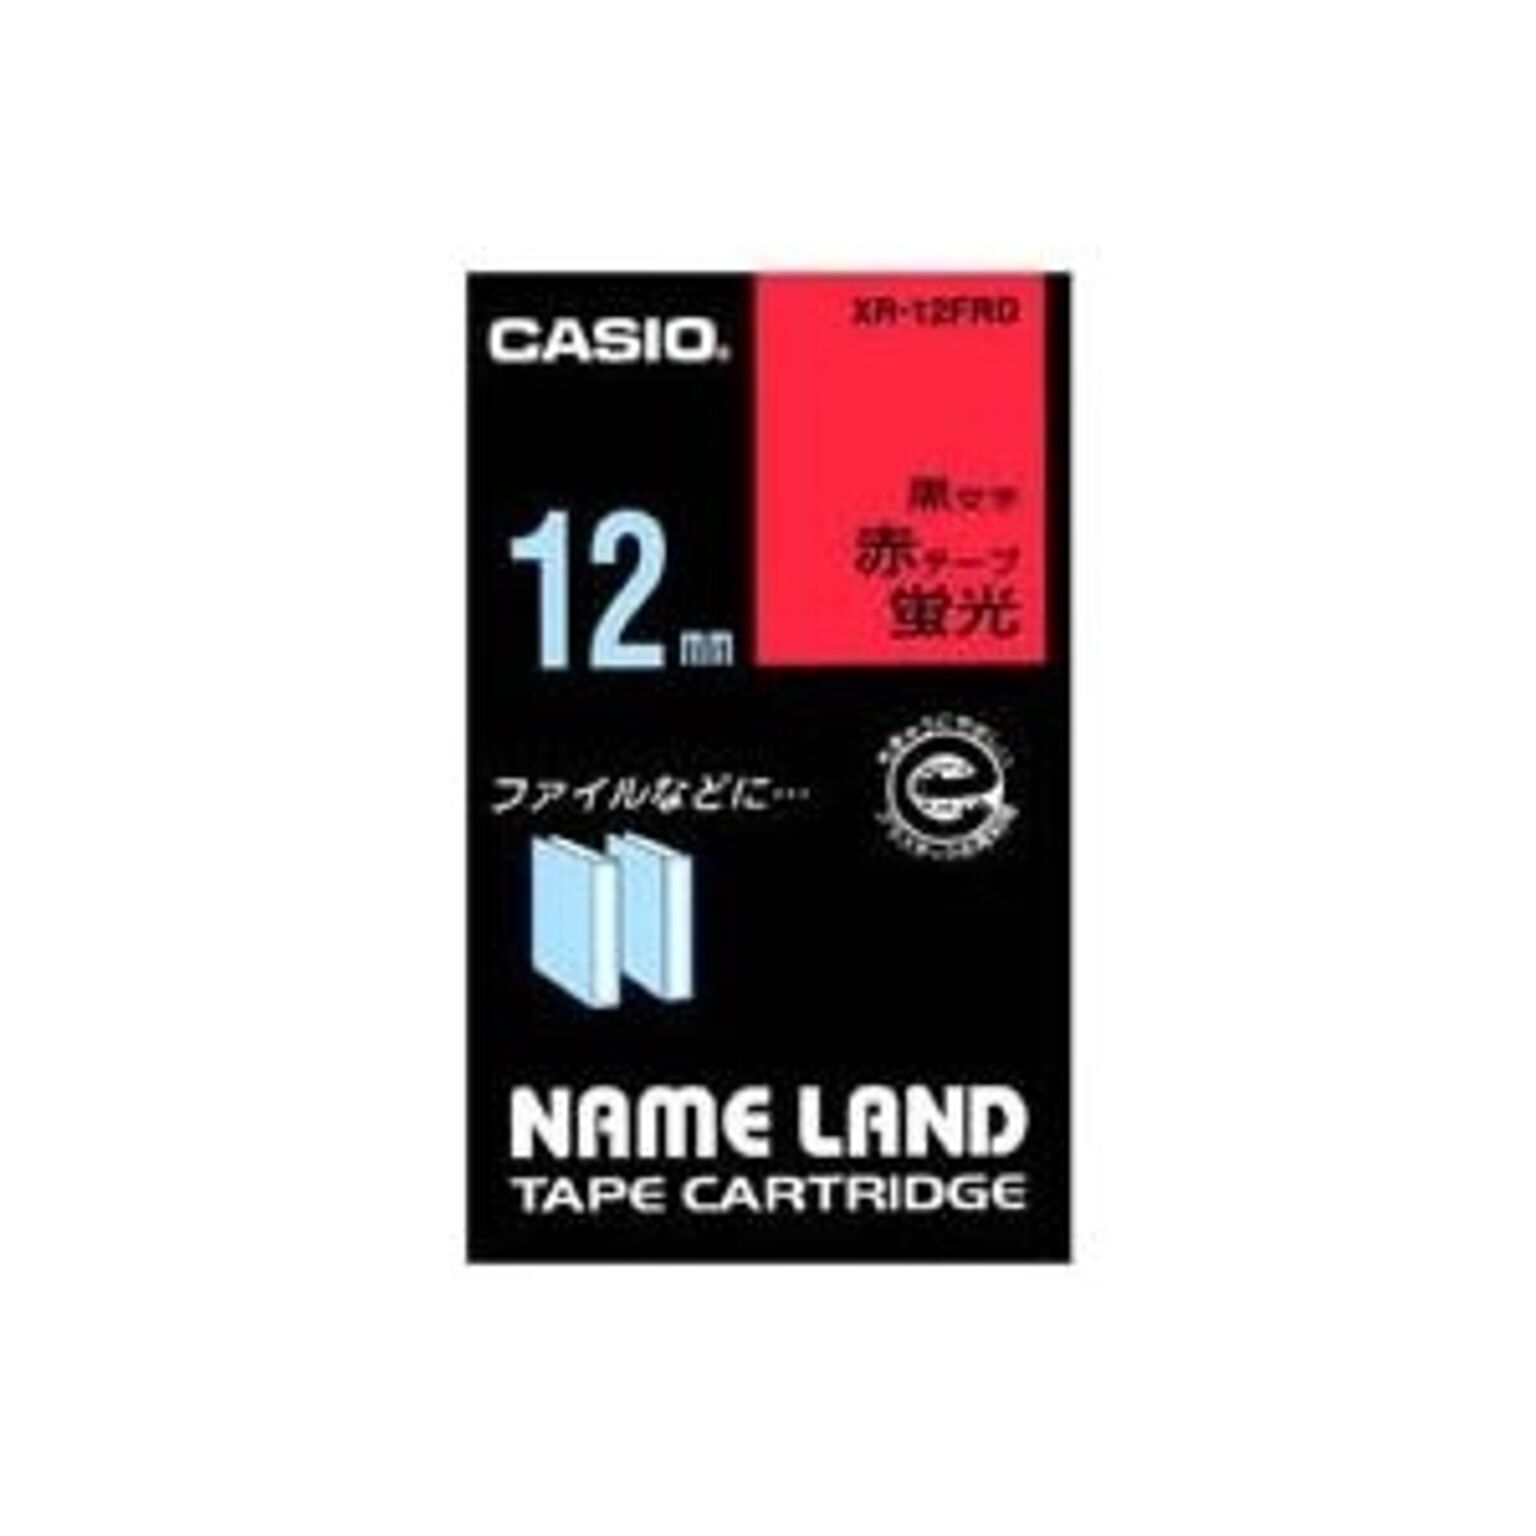 (業務用50セット) カシオ CASIO 蛍光テープ XR-12FRD 赤に黒文字 12mm